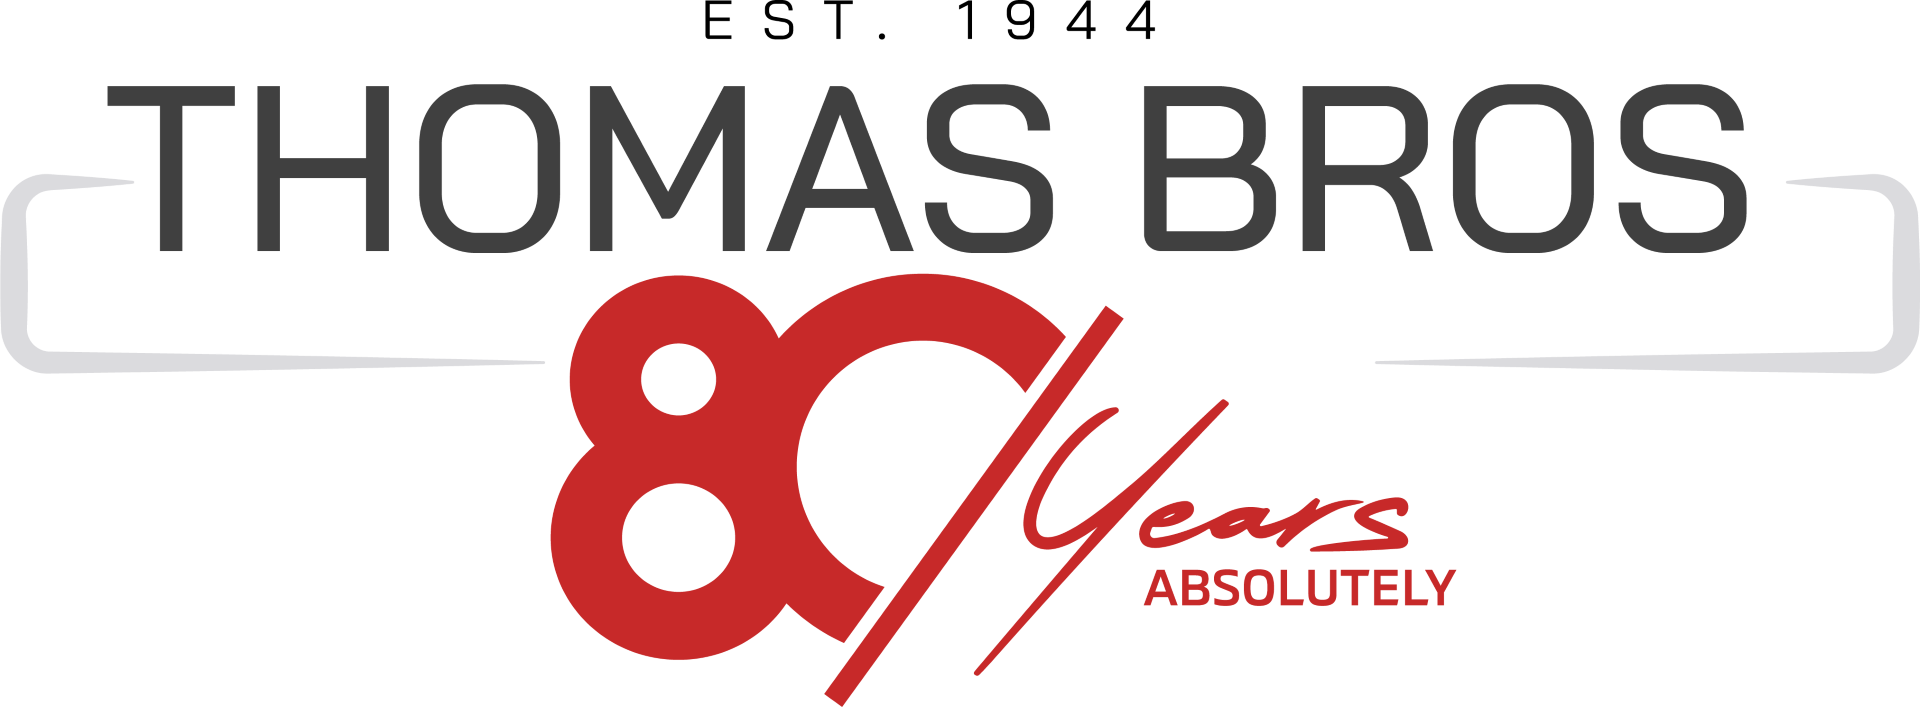 Thomas Bros Group logo